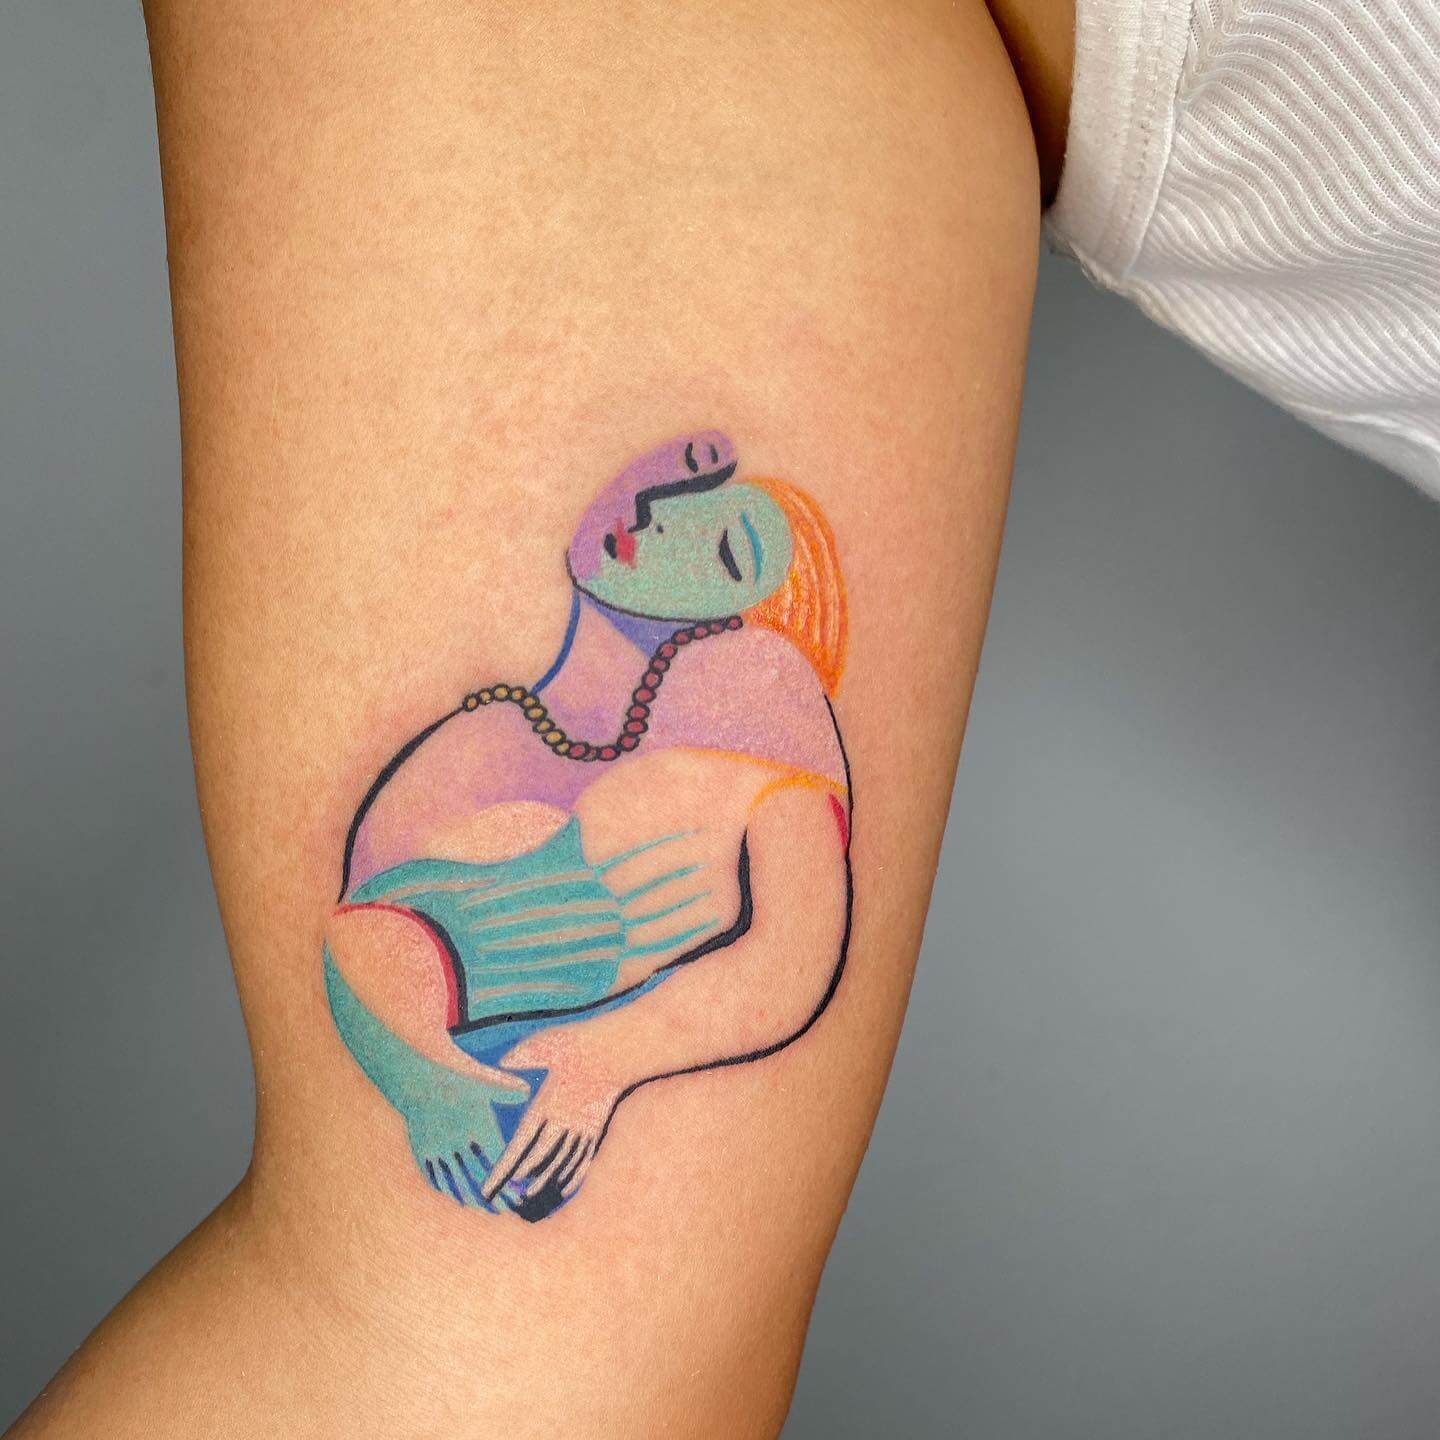 illustrative tattoo style women